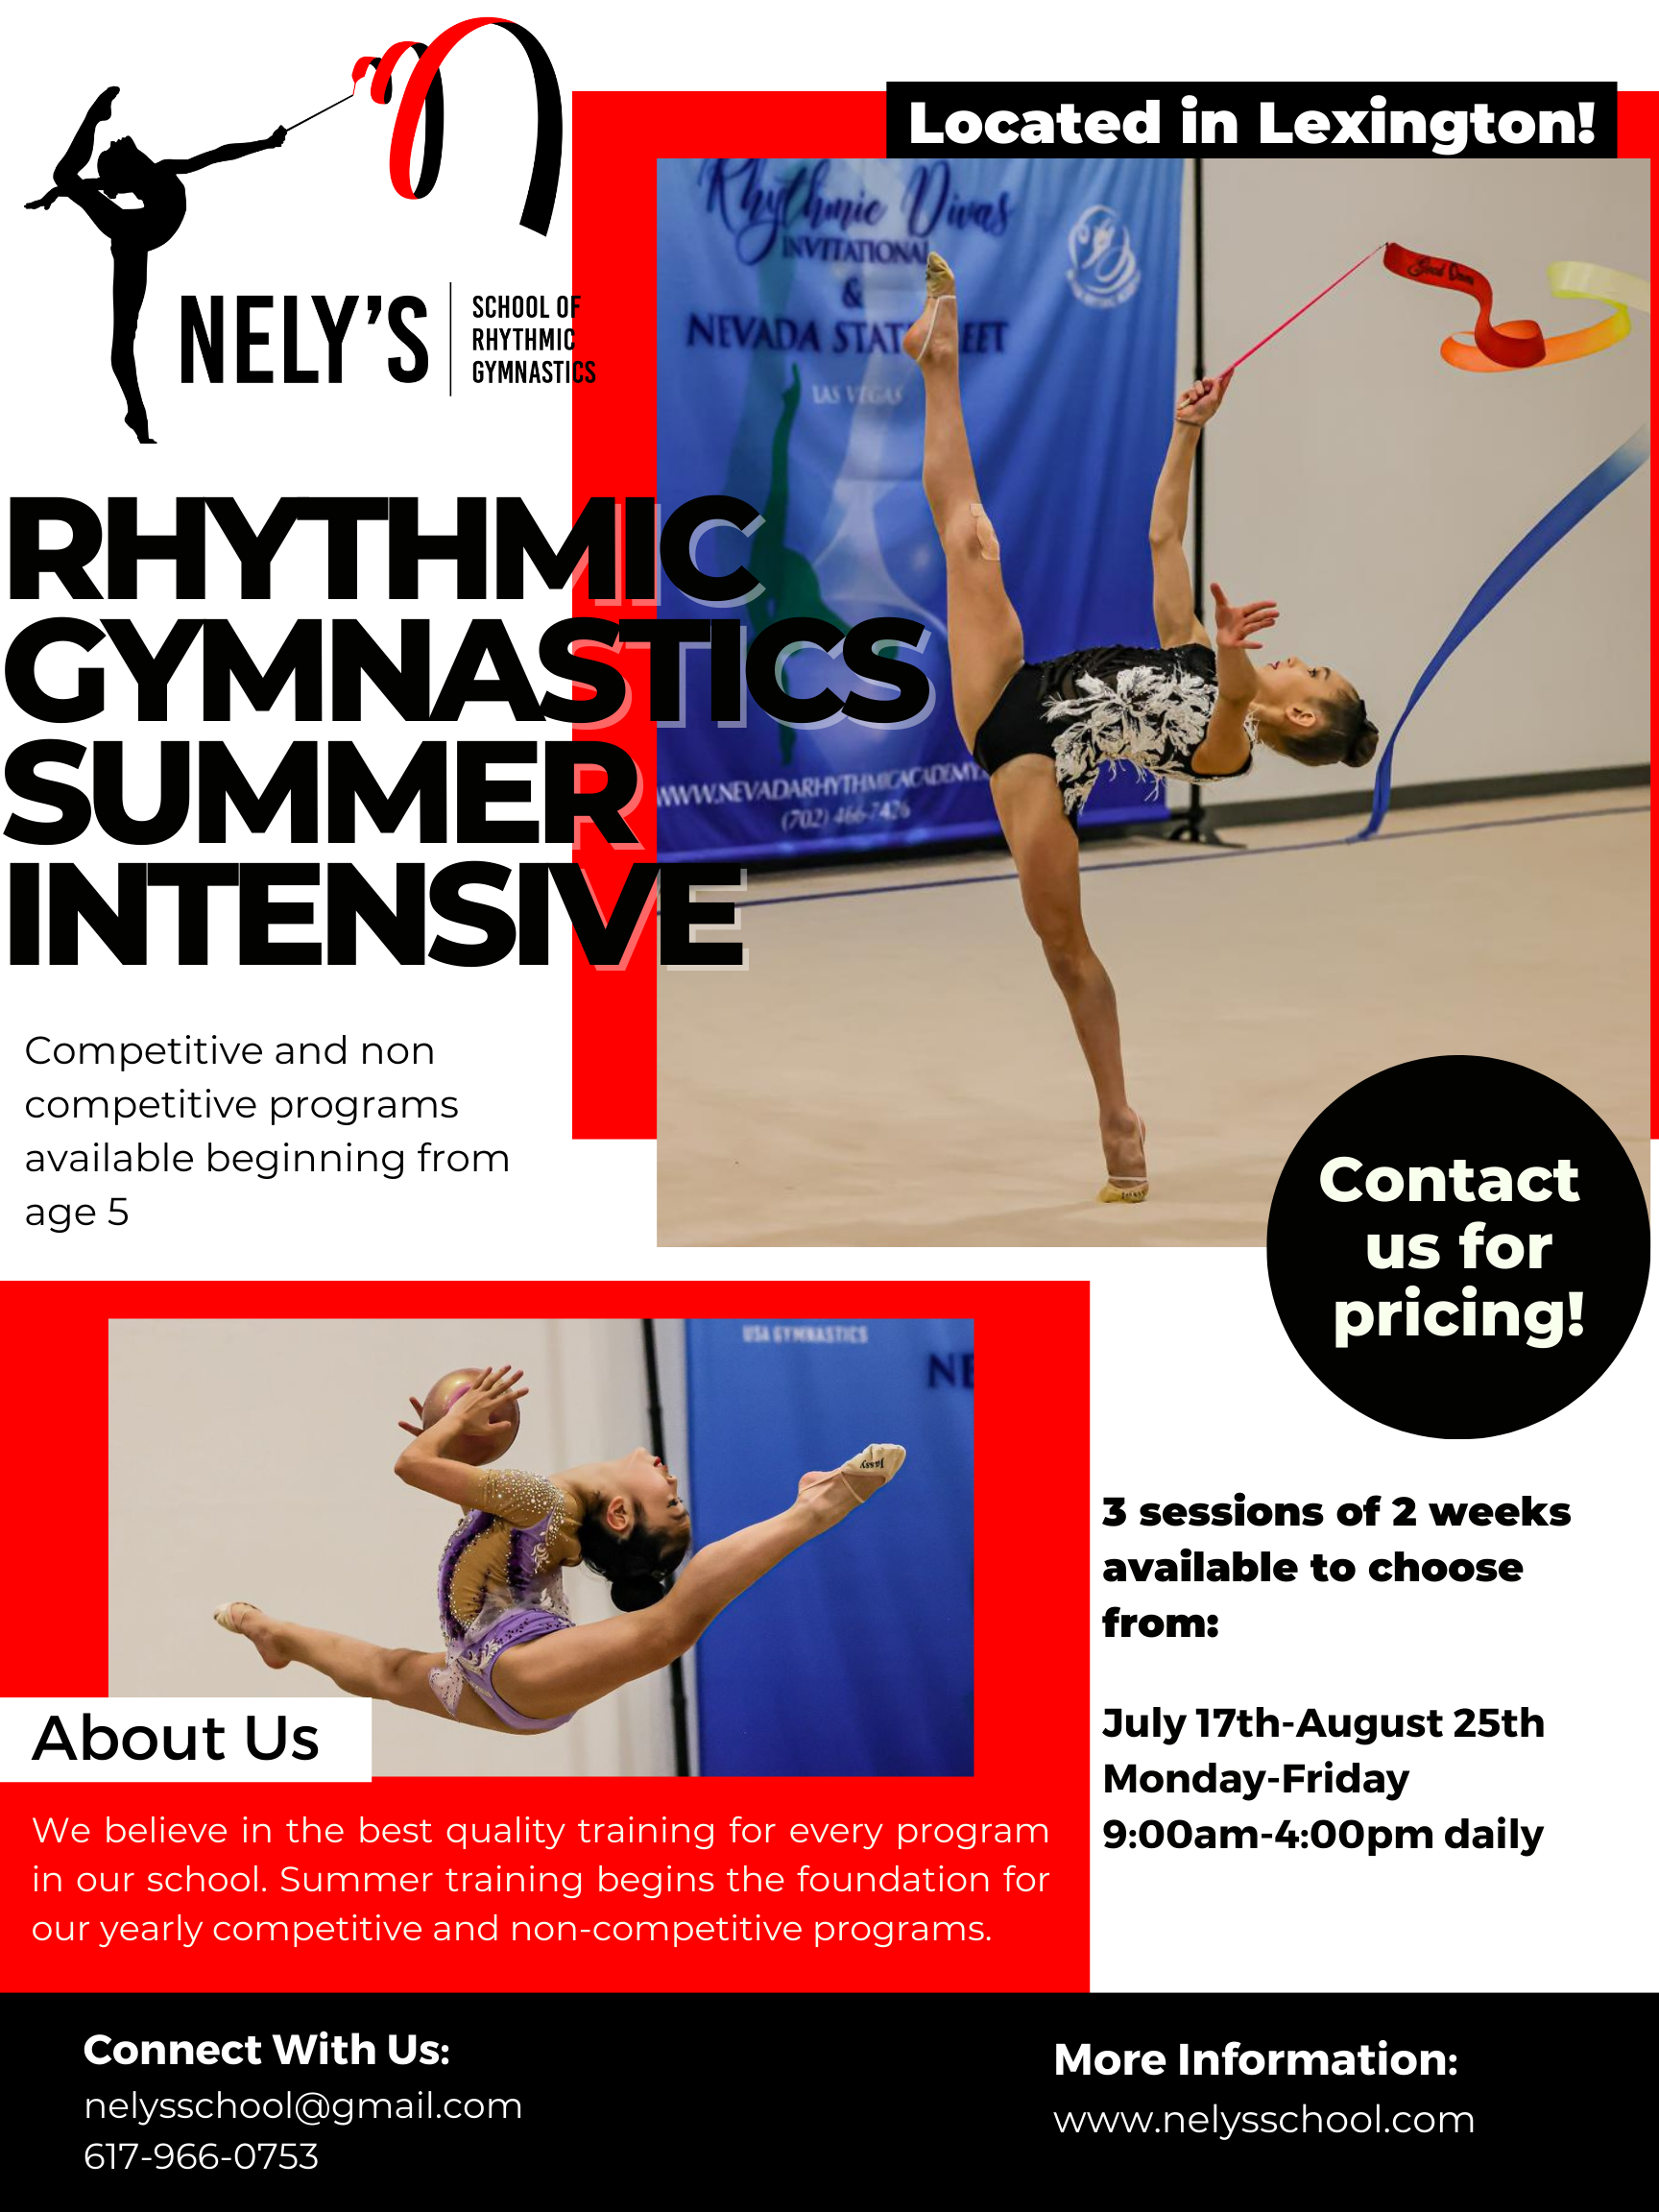 Nelys School of Rhythmic Gymnastics